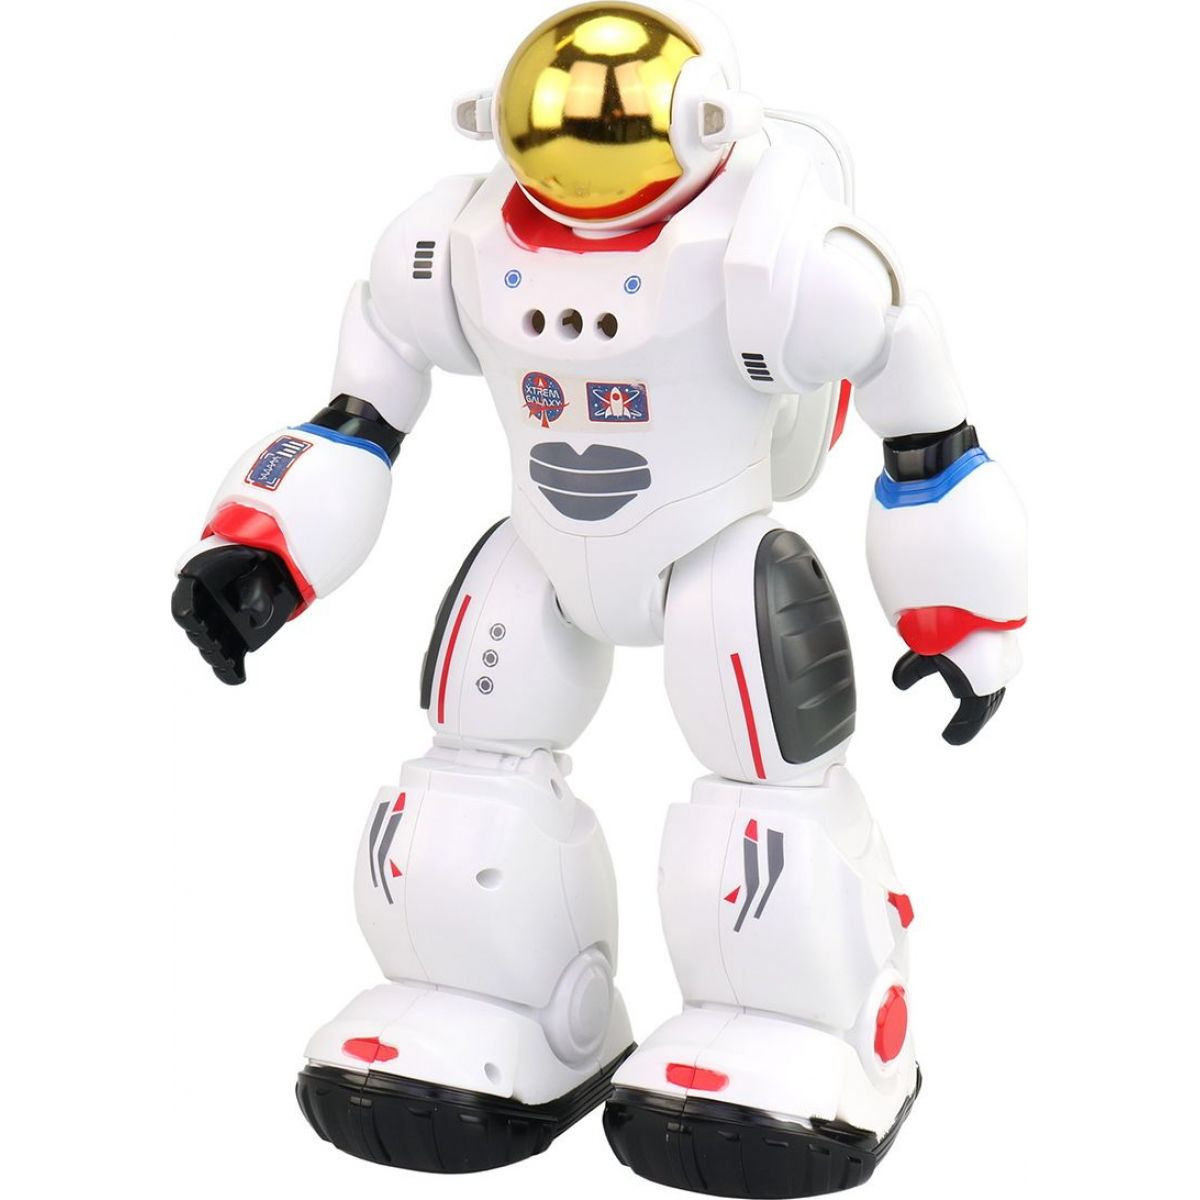 Představení robotické hračky Astronauta Charlieho